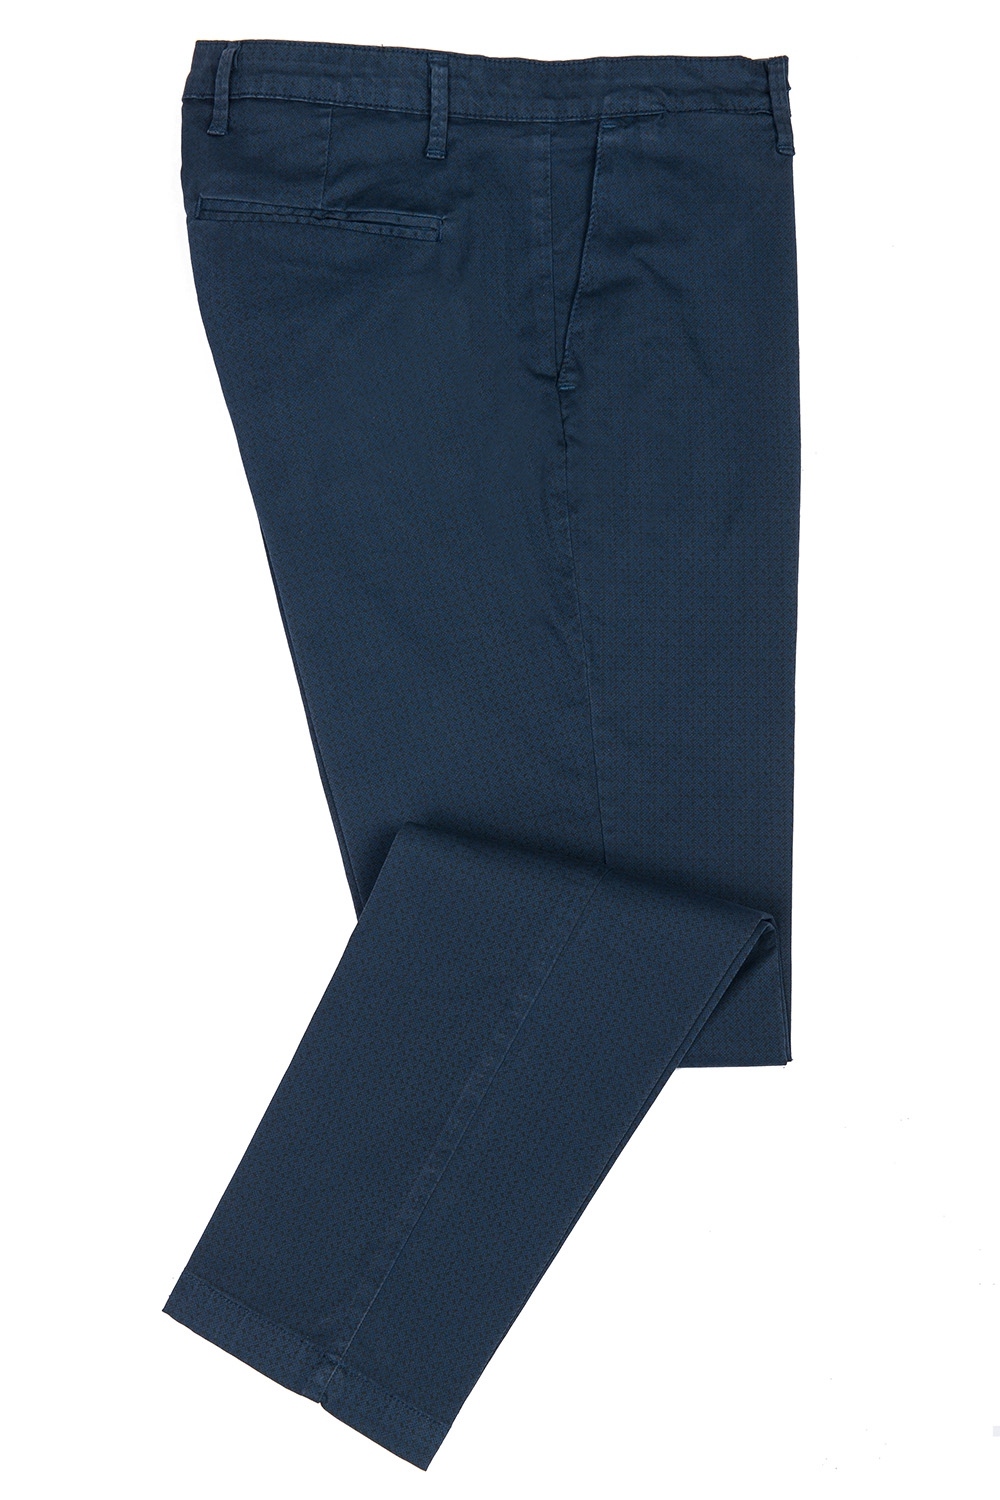 Pantaloni slim bleumarin uni 0